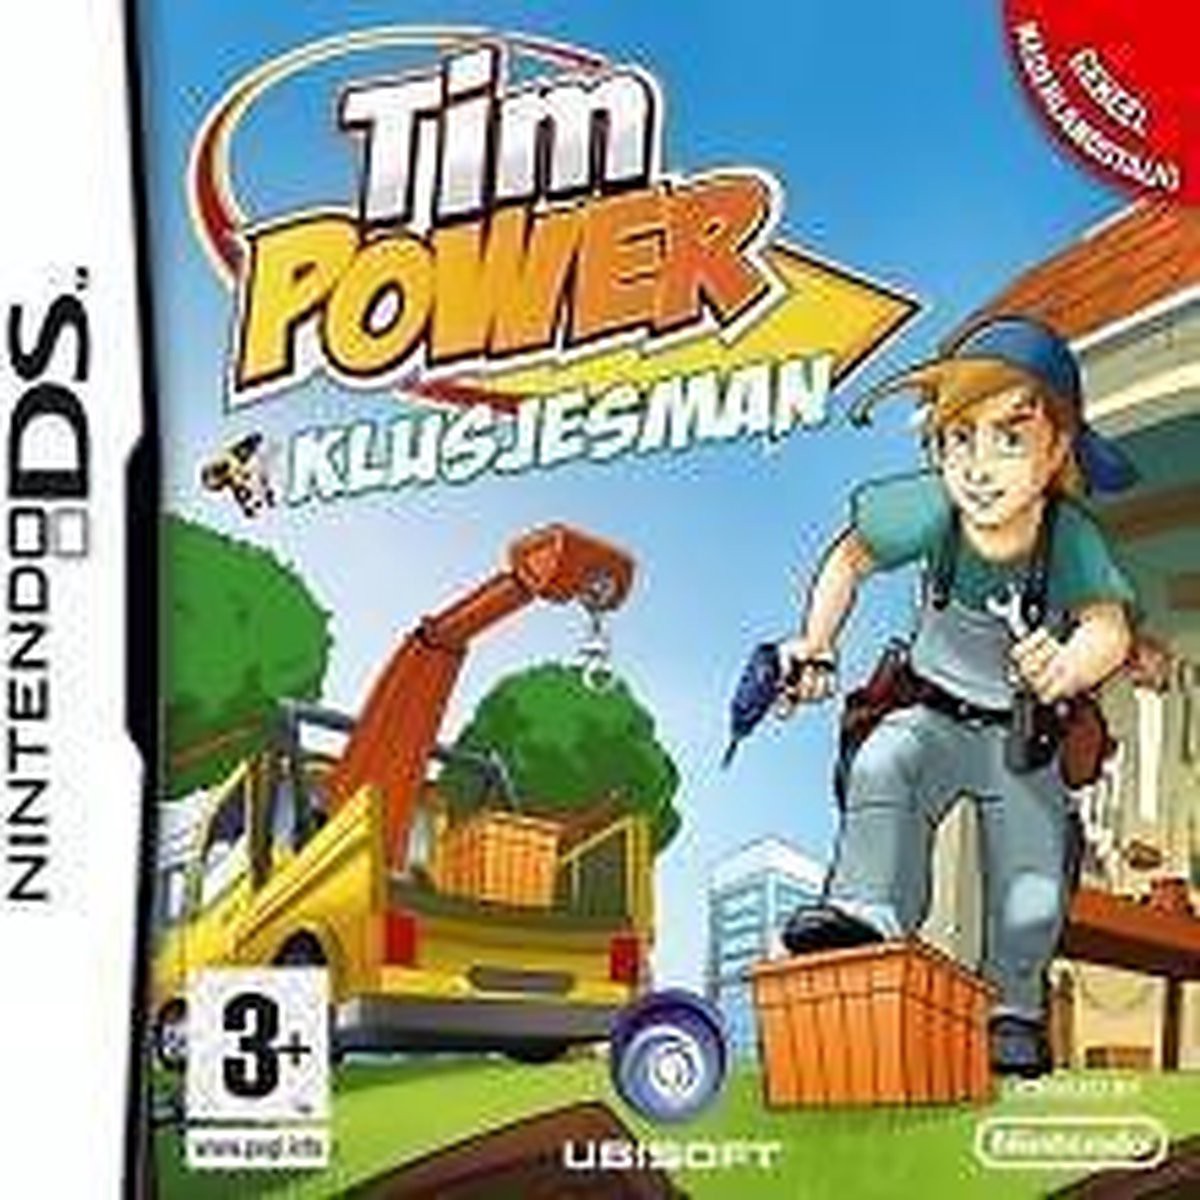 Tim Power - Klusjesman - Nintendo DS Games